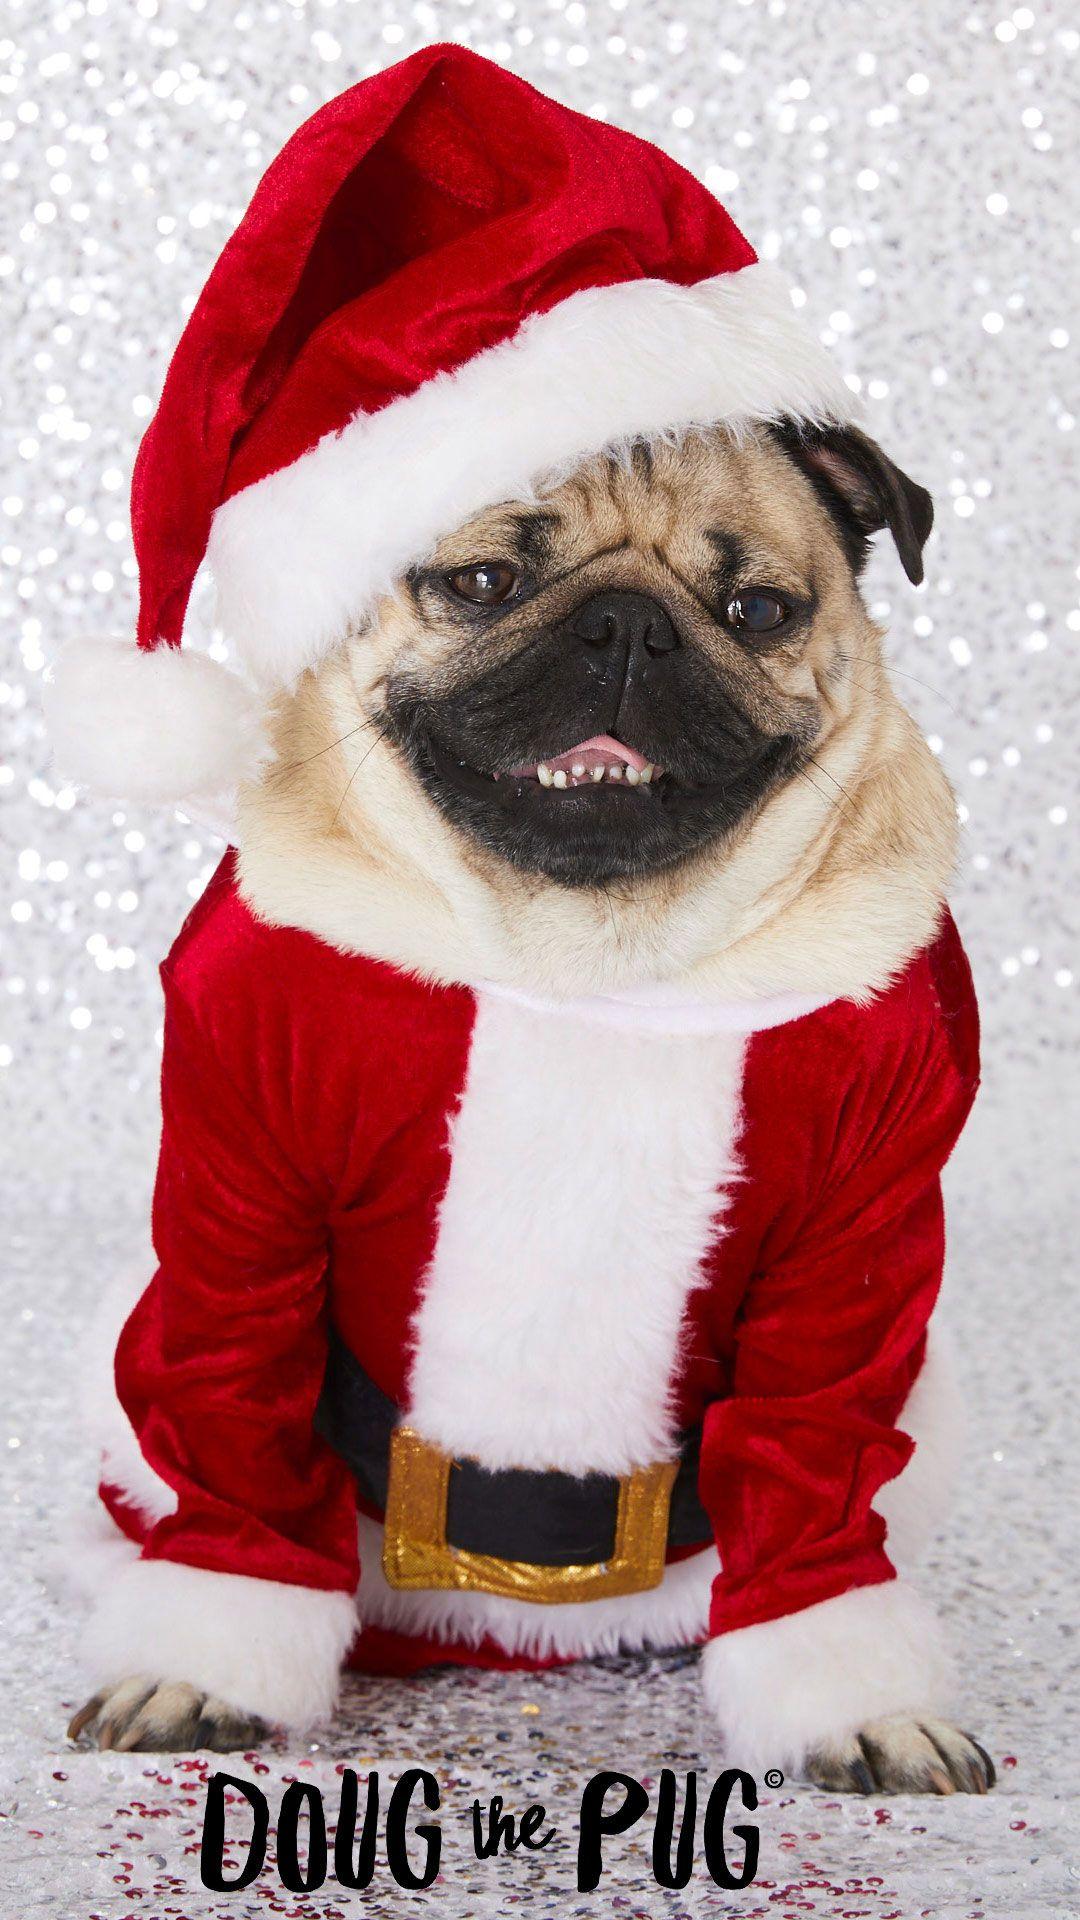 FREE Doug the Pug Christmas Wallpaper - #ClairesBlog. Slime